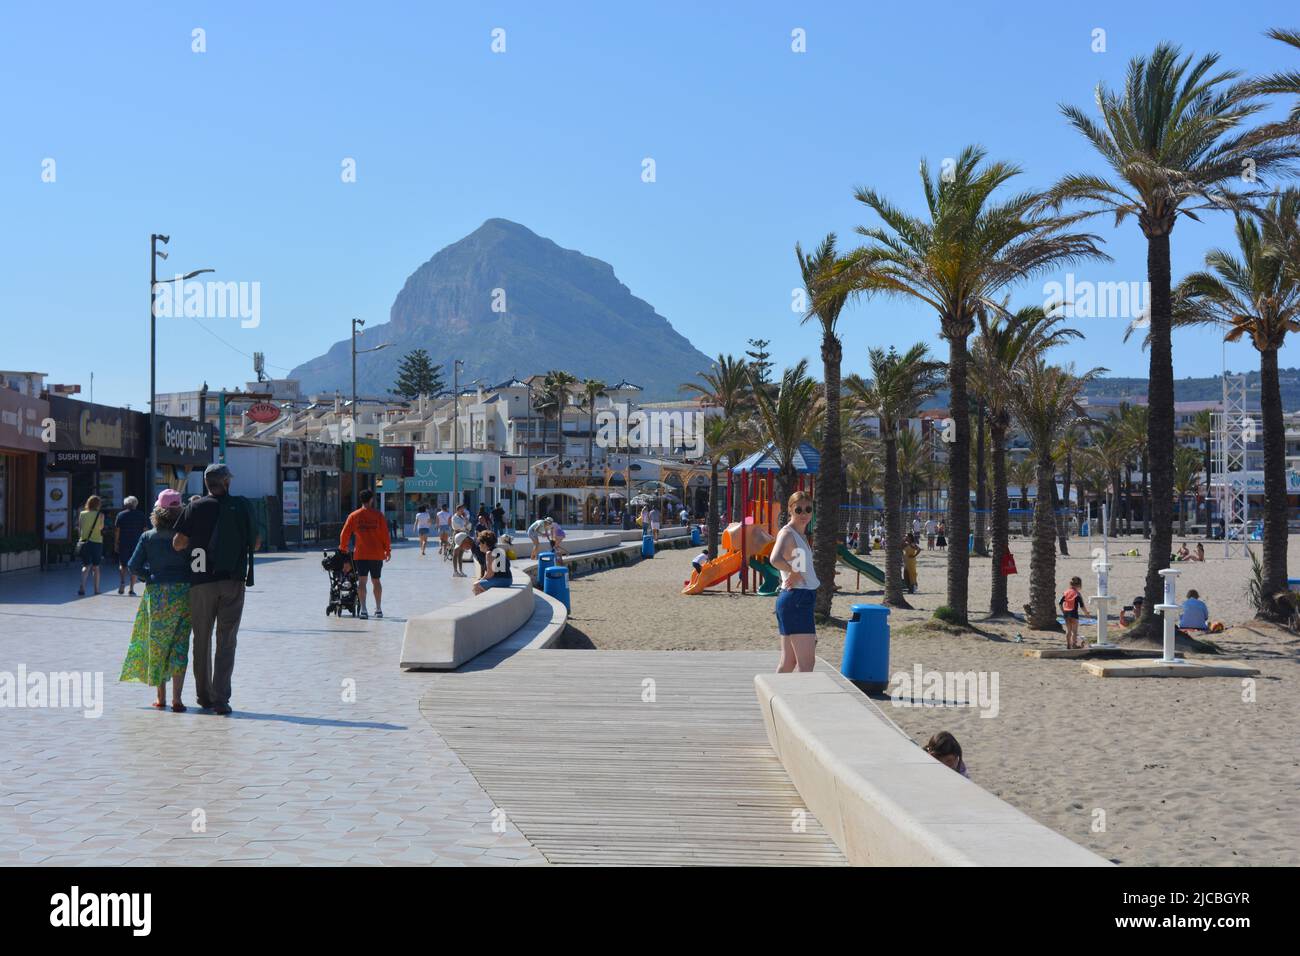 Javea, Alicante, Espagne - 11 mai 2022: La plage Arenal avec des touristes, des magasins et des restaurants sur le front de mer et la montagne Montgo en arrière-plan Banque D'Images